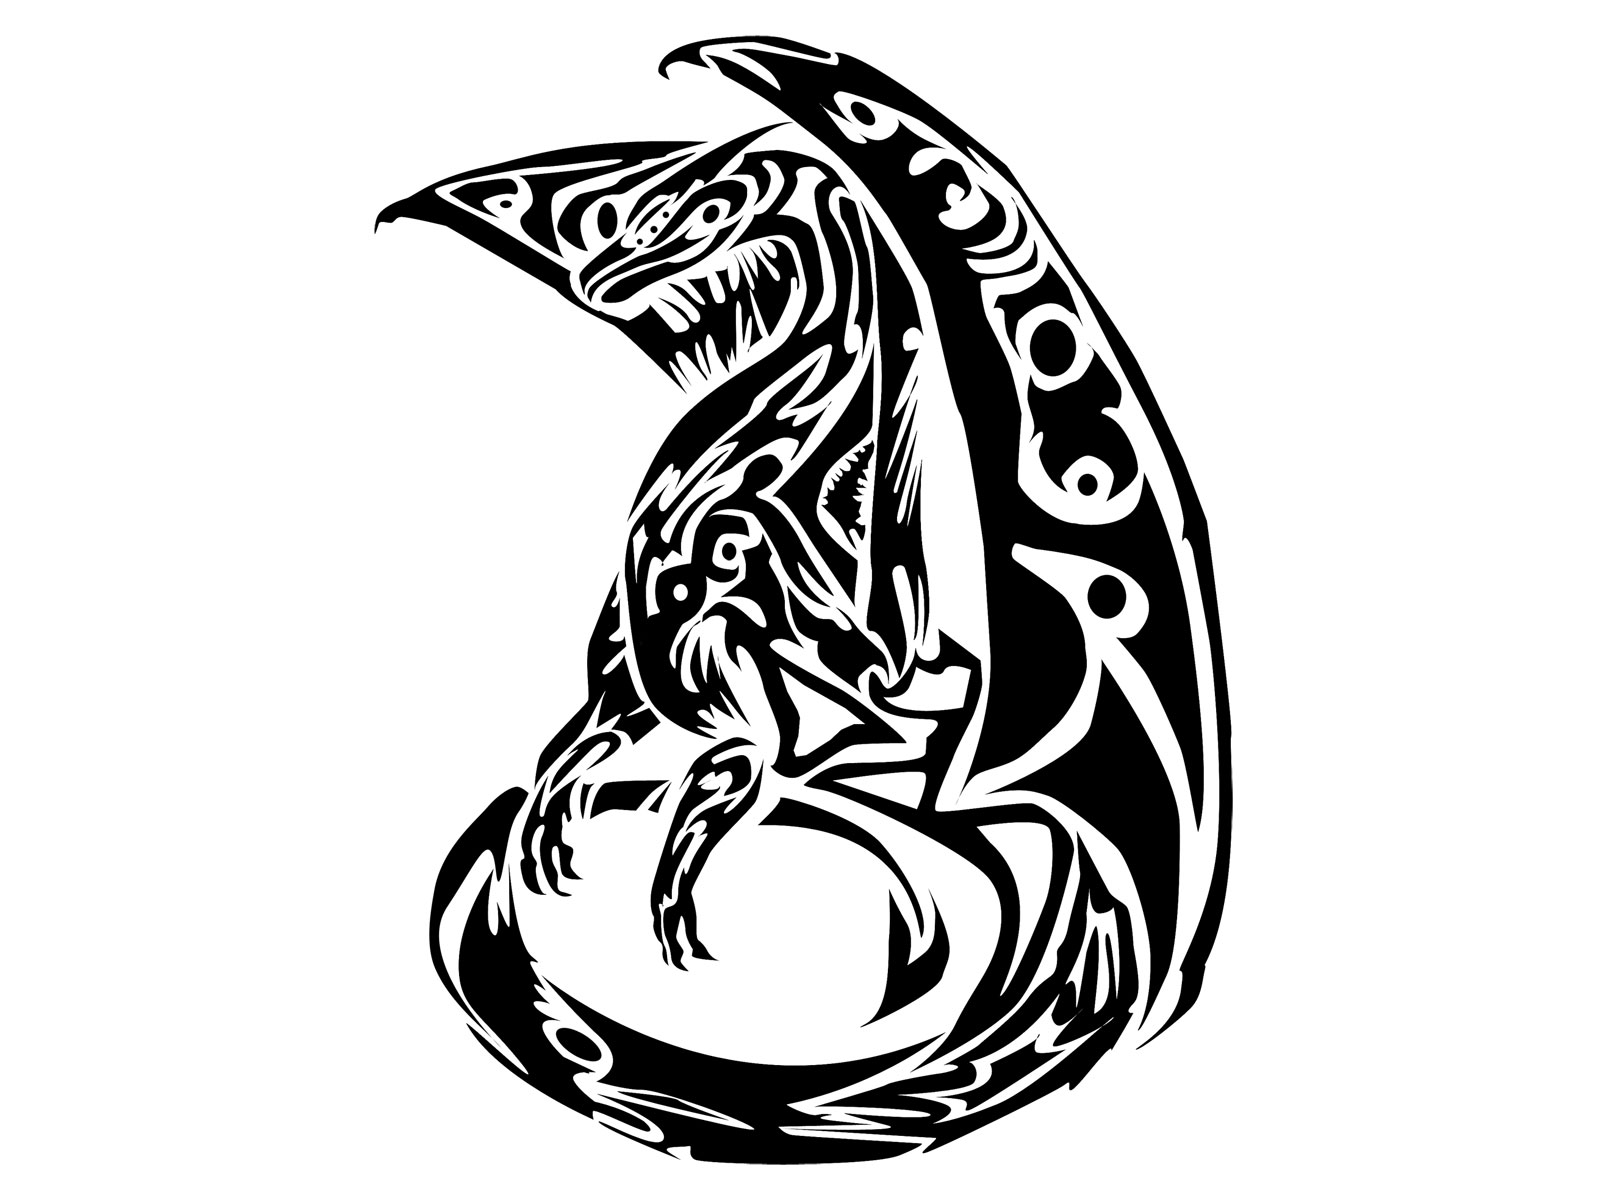 Кельтский дракон трайбл